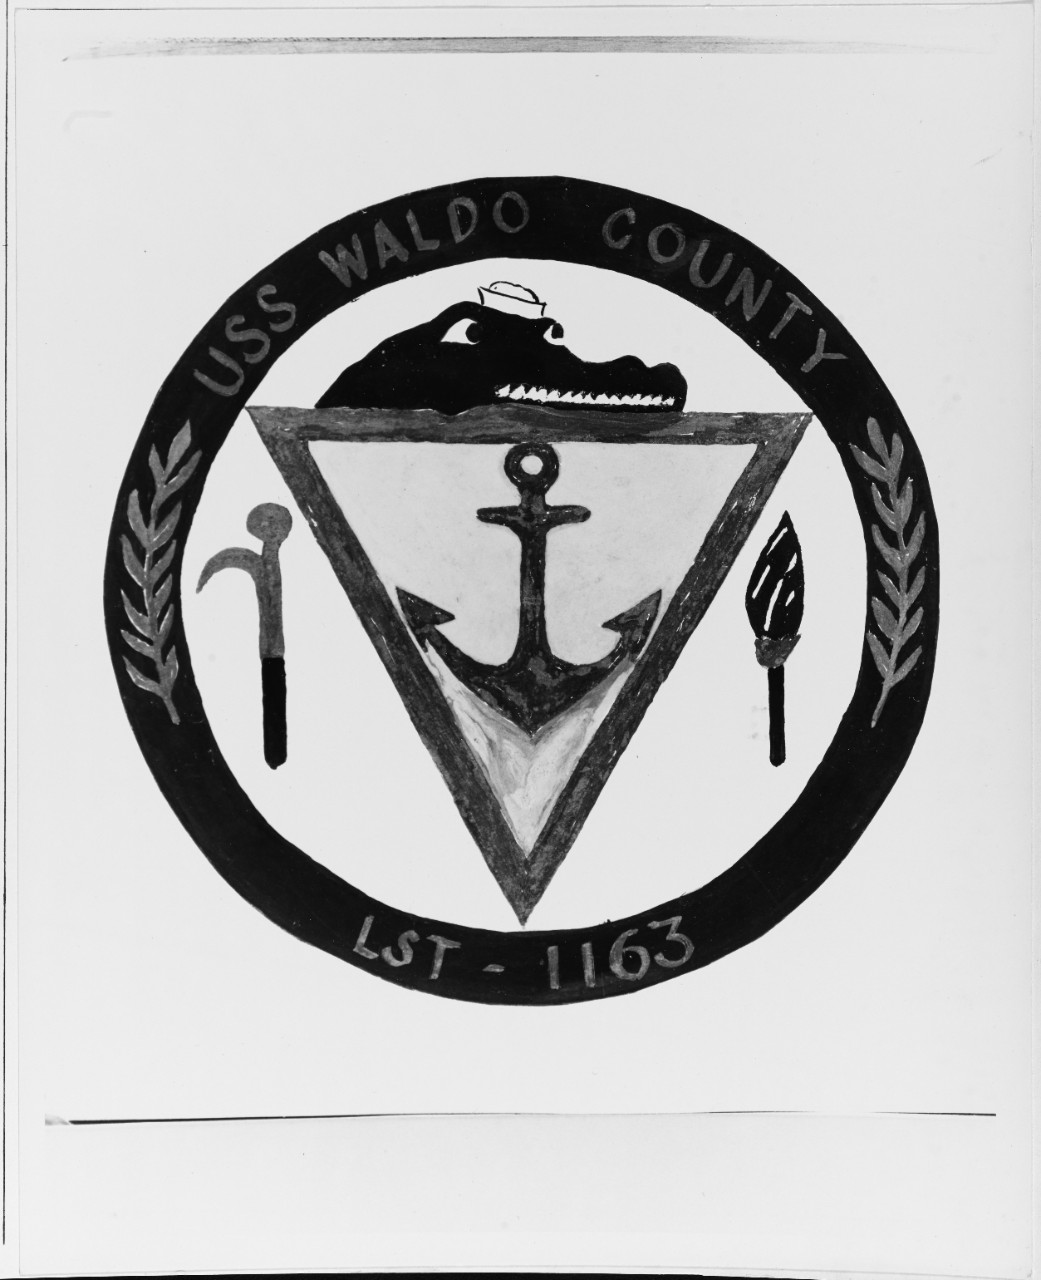 Insignia: USS WALDO COUNTY (LST-1163)